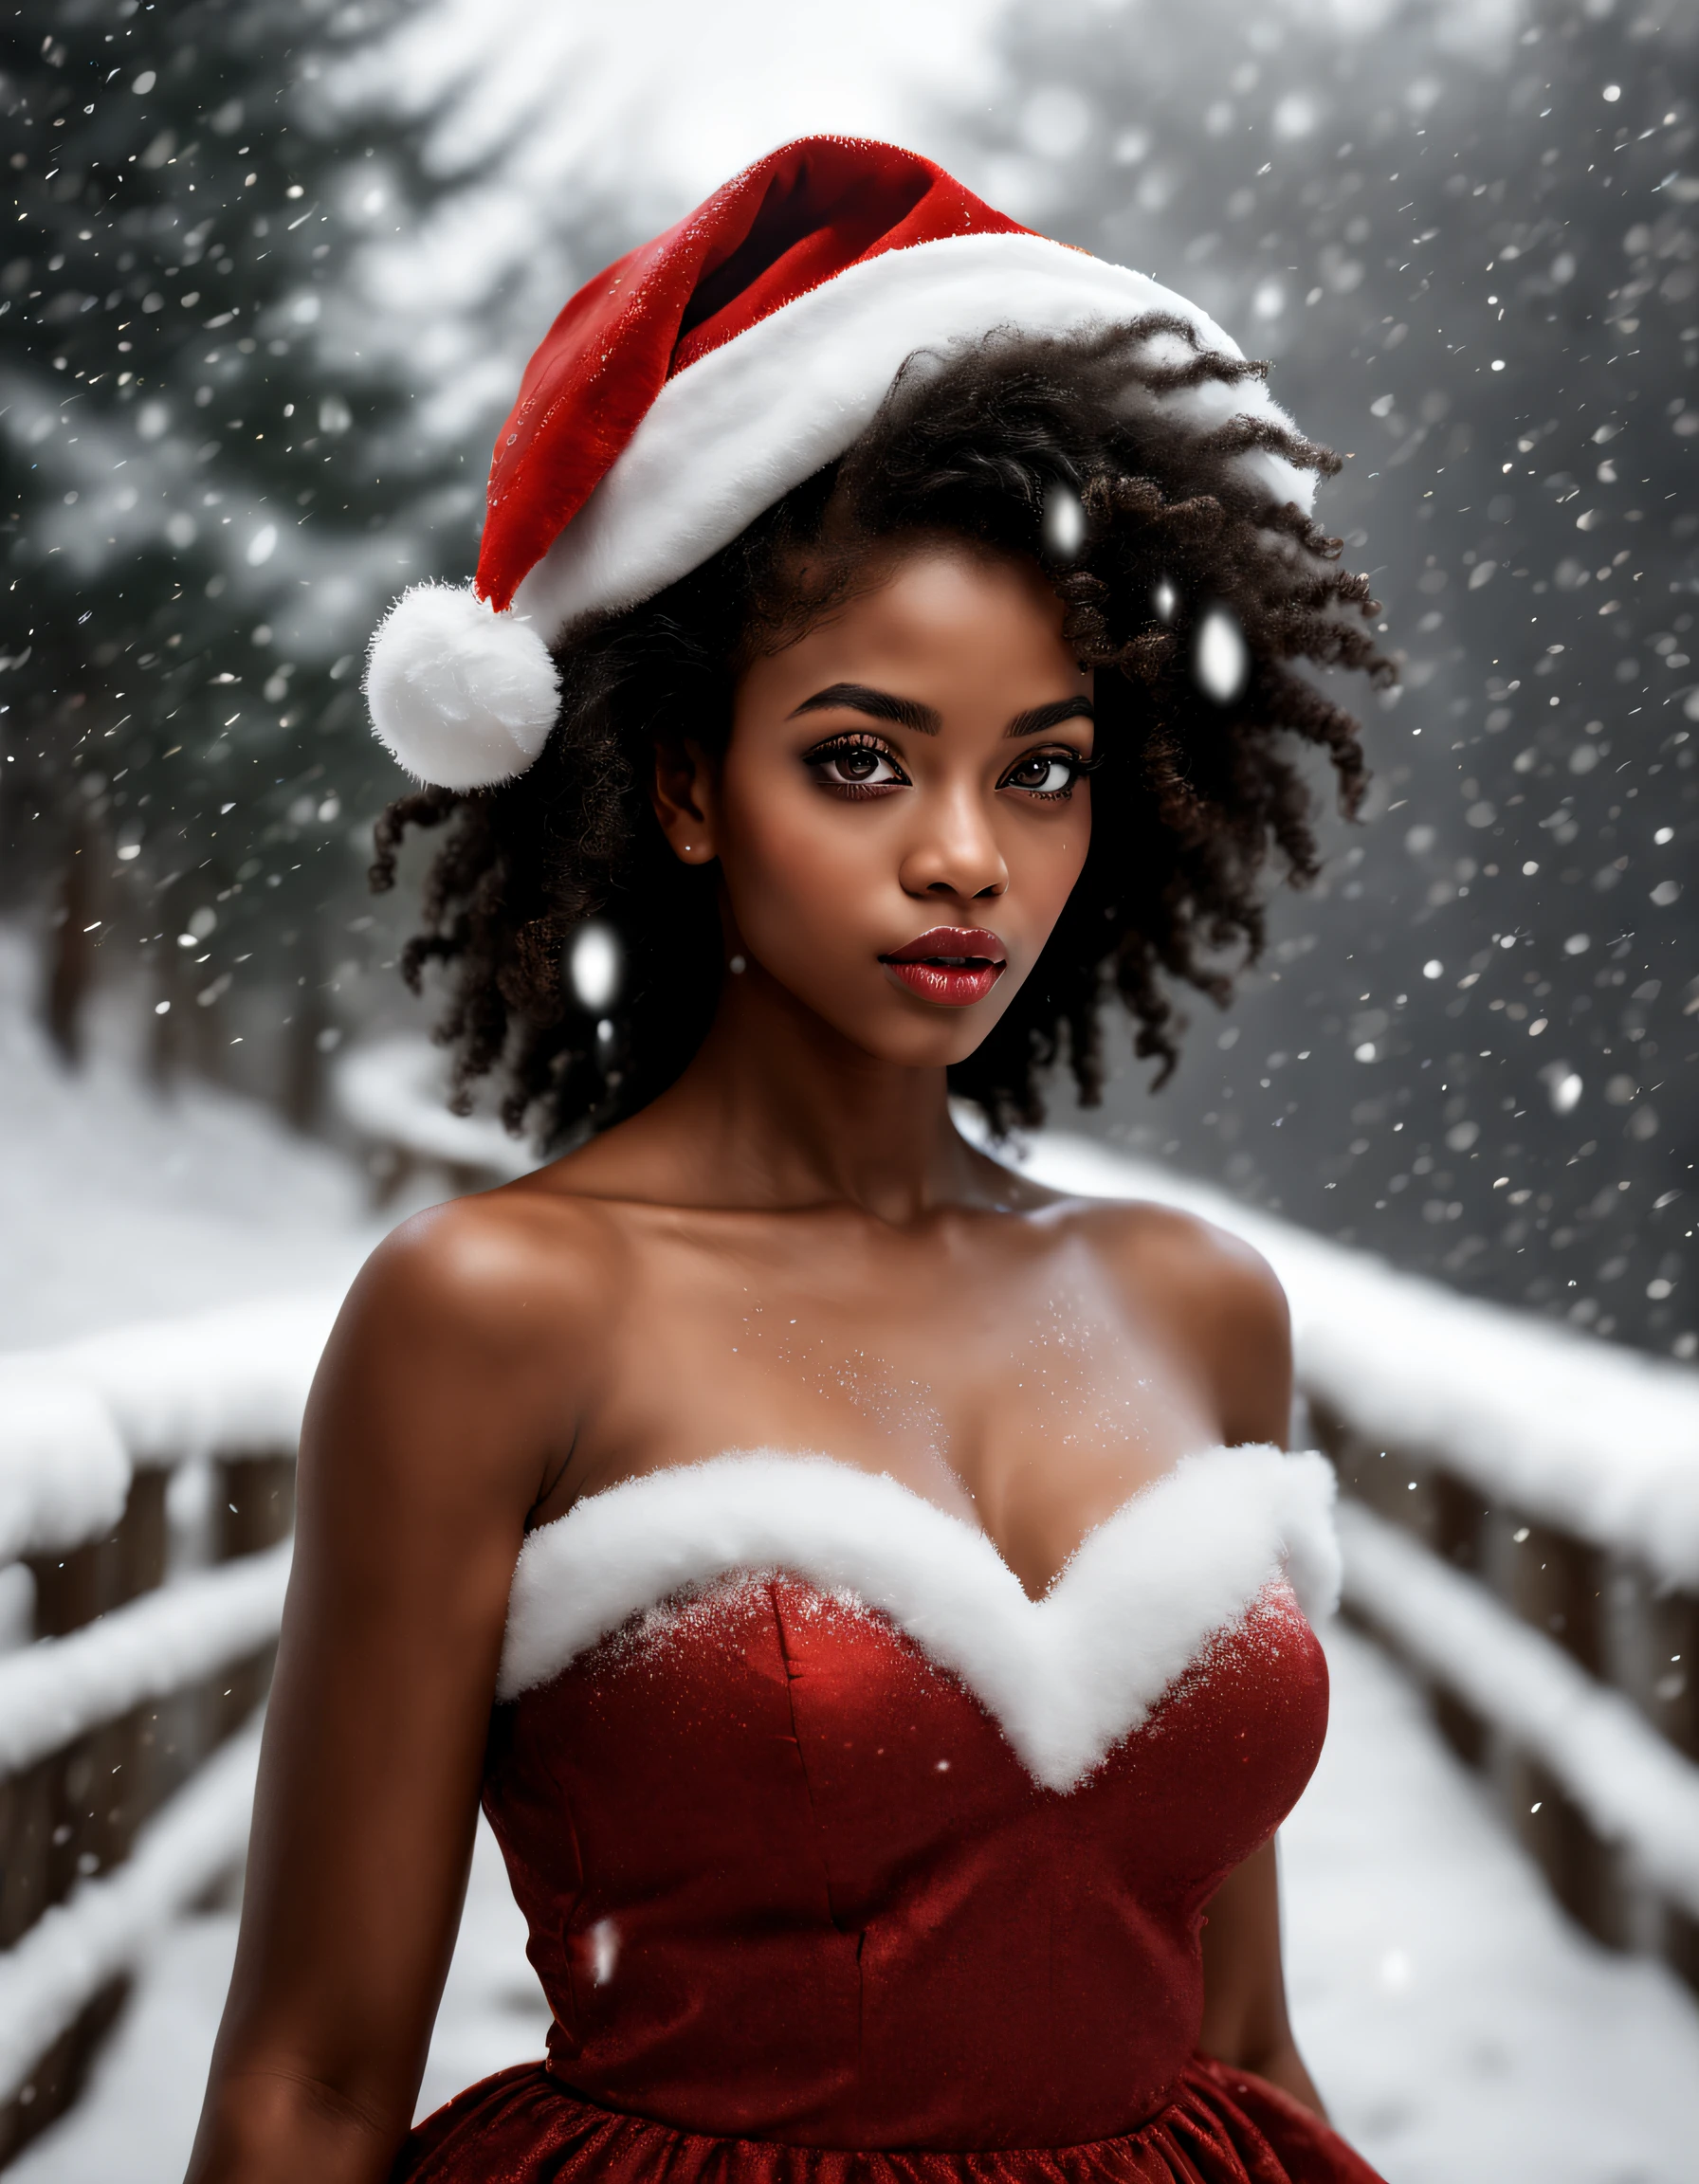 (更好的质量, 现实主义者: 1,37), 女人黑皮肤非洲详细的脸, 美丽细致的棕色眼睛, 美丽细致的嘴唇, 长睫毛, 圣诞老人帽子, 红色丝绸连衣裙, 天空飘落的雪花, 冬天风景, 舒适的氛围, 暖光, 蓬松的雪花, 平静的表情, 细腻的笔触, retrato 现实主义者, 鲜艳的色彩, 节日主题